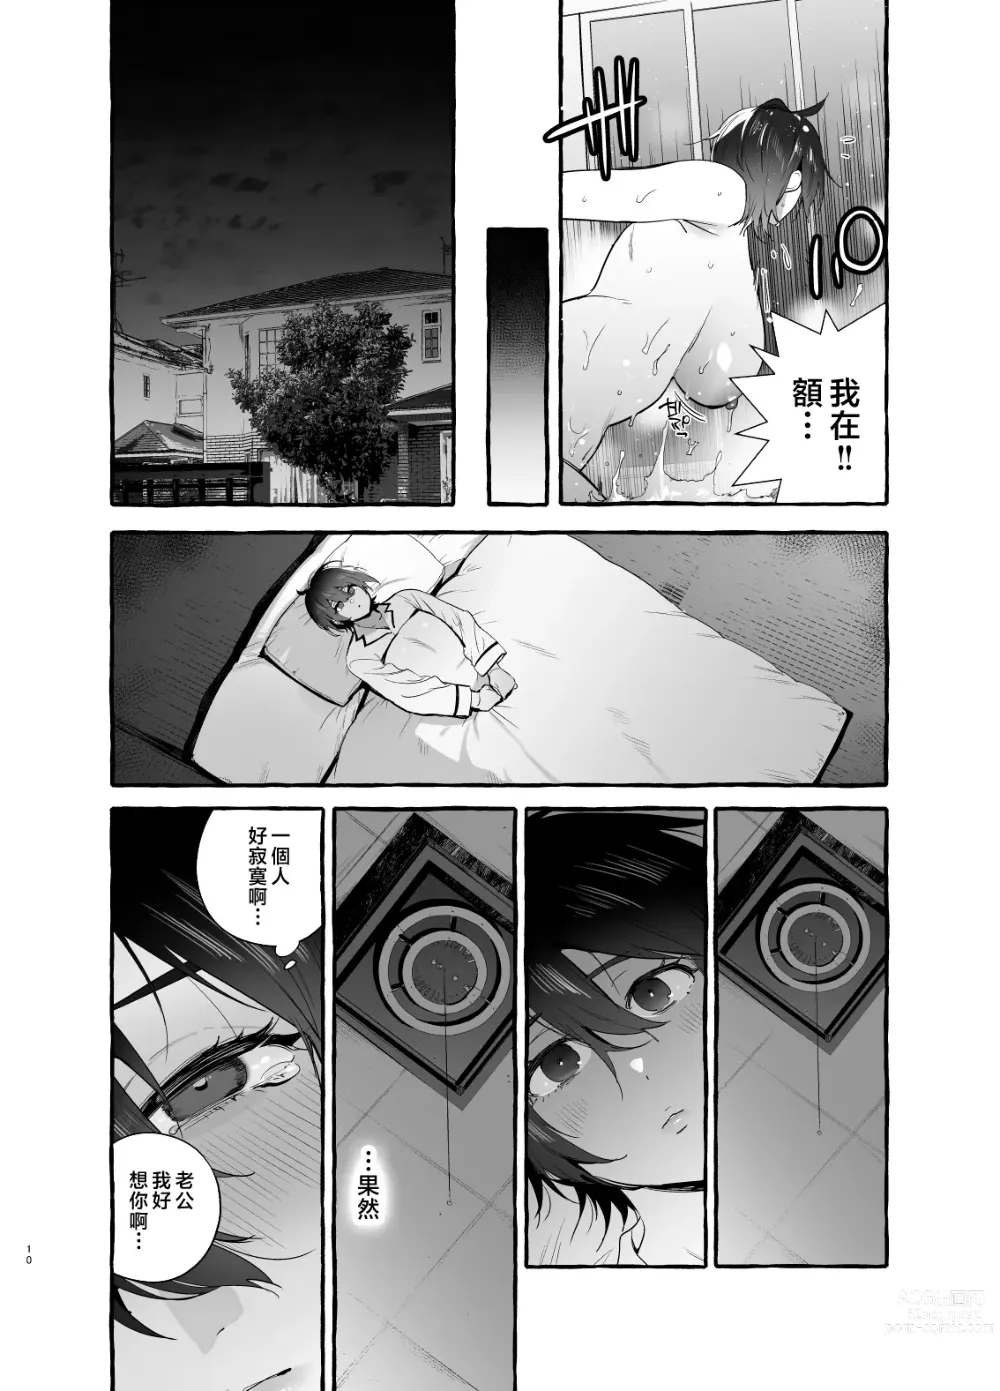 Page 11 of doujinshi Deka Tsuyo Mama wa Boku ni Amai.